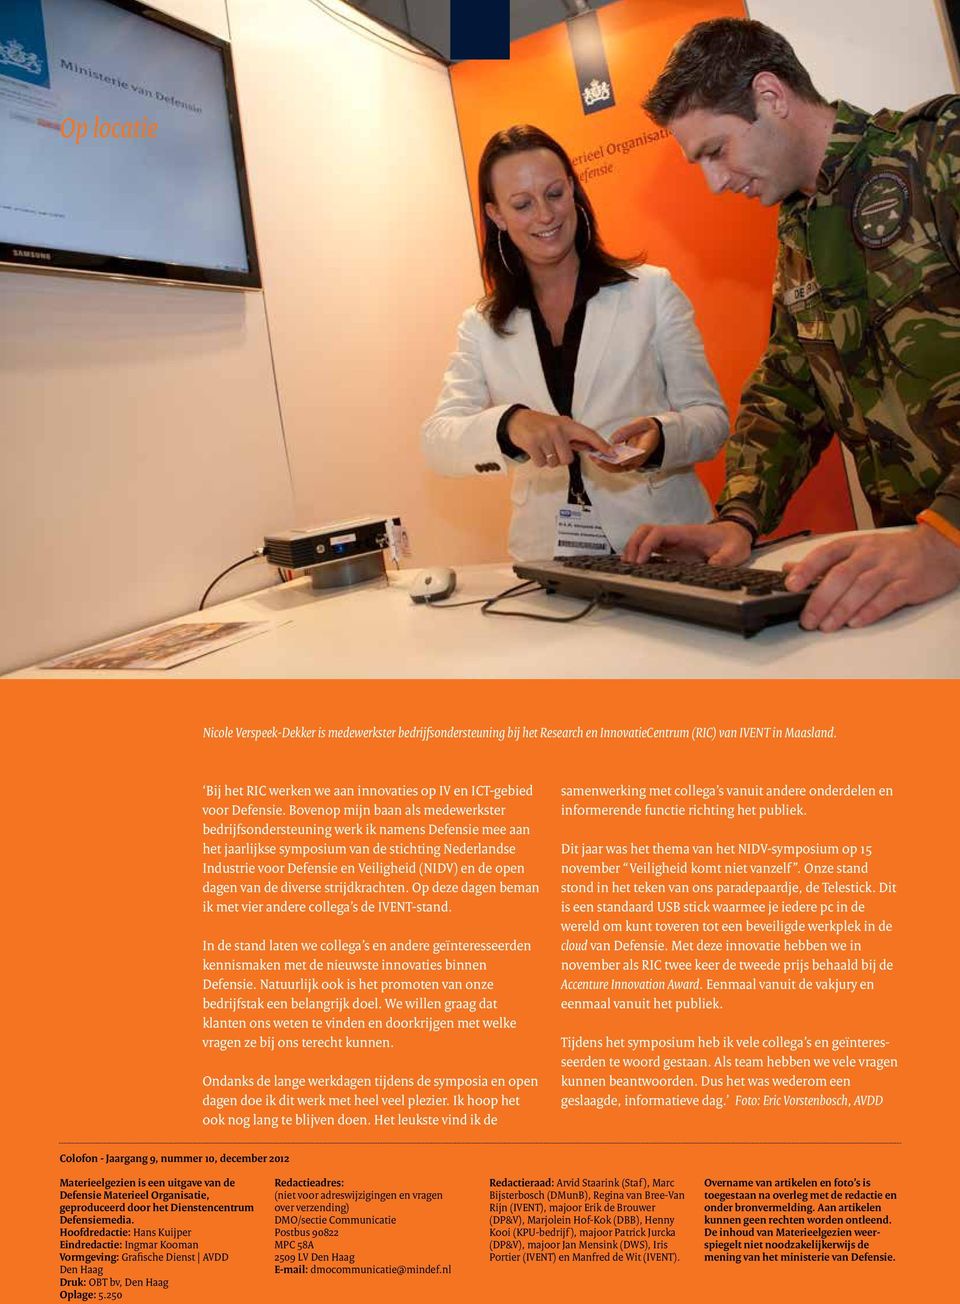 Bovenop mijn baan als medewerkster bedrijfsondersteuning werk ik namens Defensie mee aan het jaarlijkse symposium van de stichting Nederlandse Industrie voor Defensie en Veiligheid (NIDV) en de open